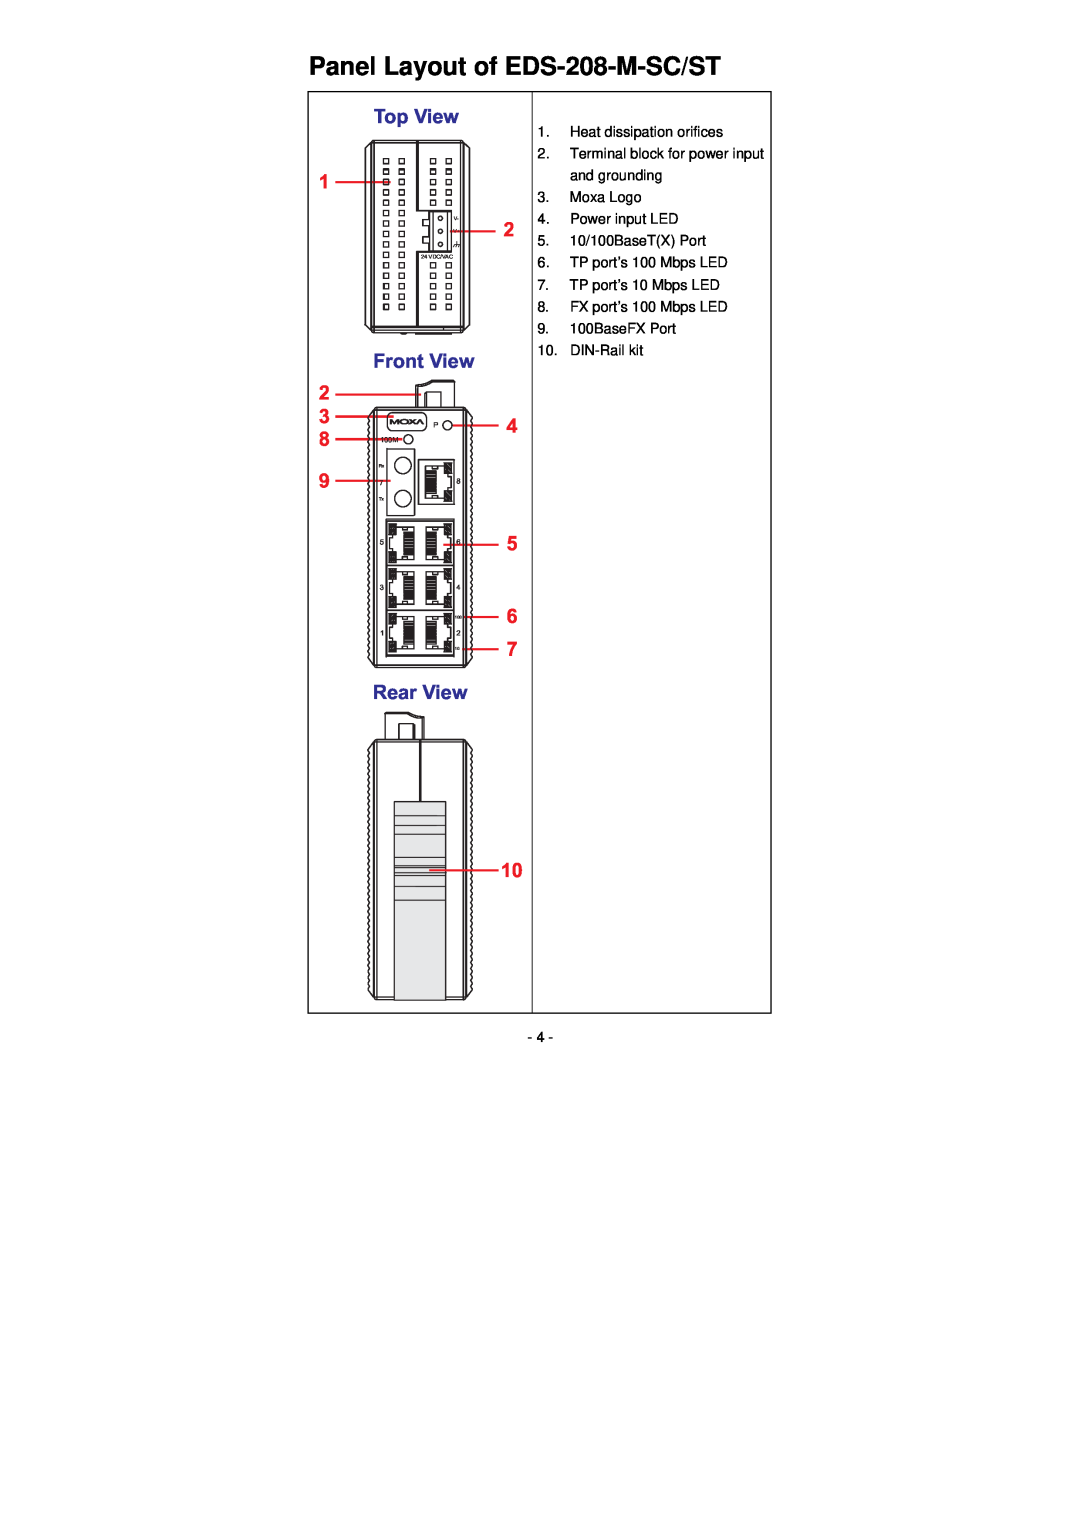 Moxa Technologies Panel Layout of EDS-208-M-SC/ST, TP port’s 10 Mbps LED 8. FX port’s 100 Mbps LED 9. 100BaseFX Port 